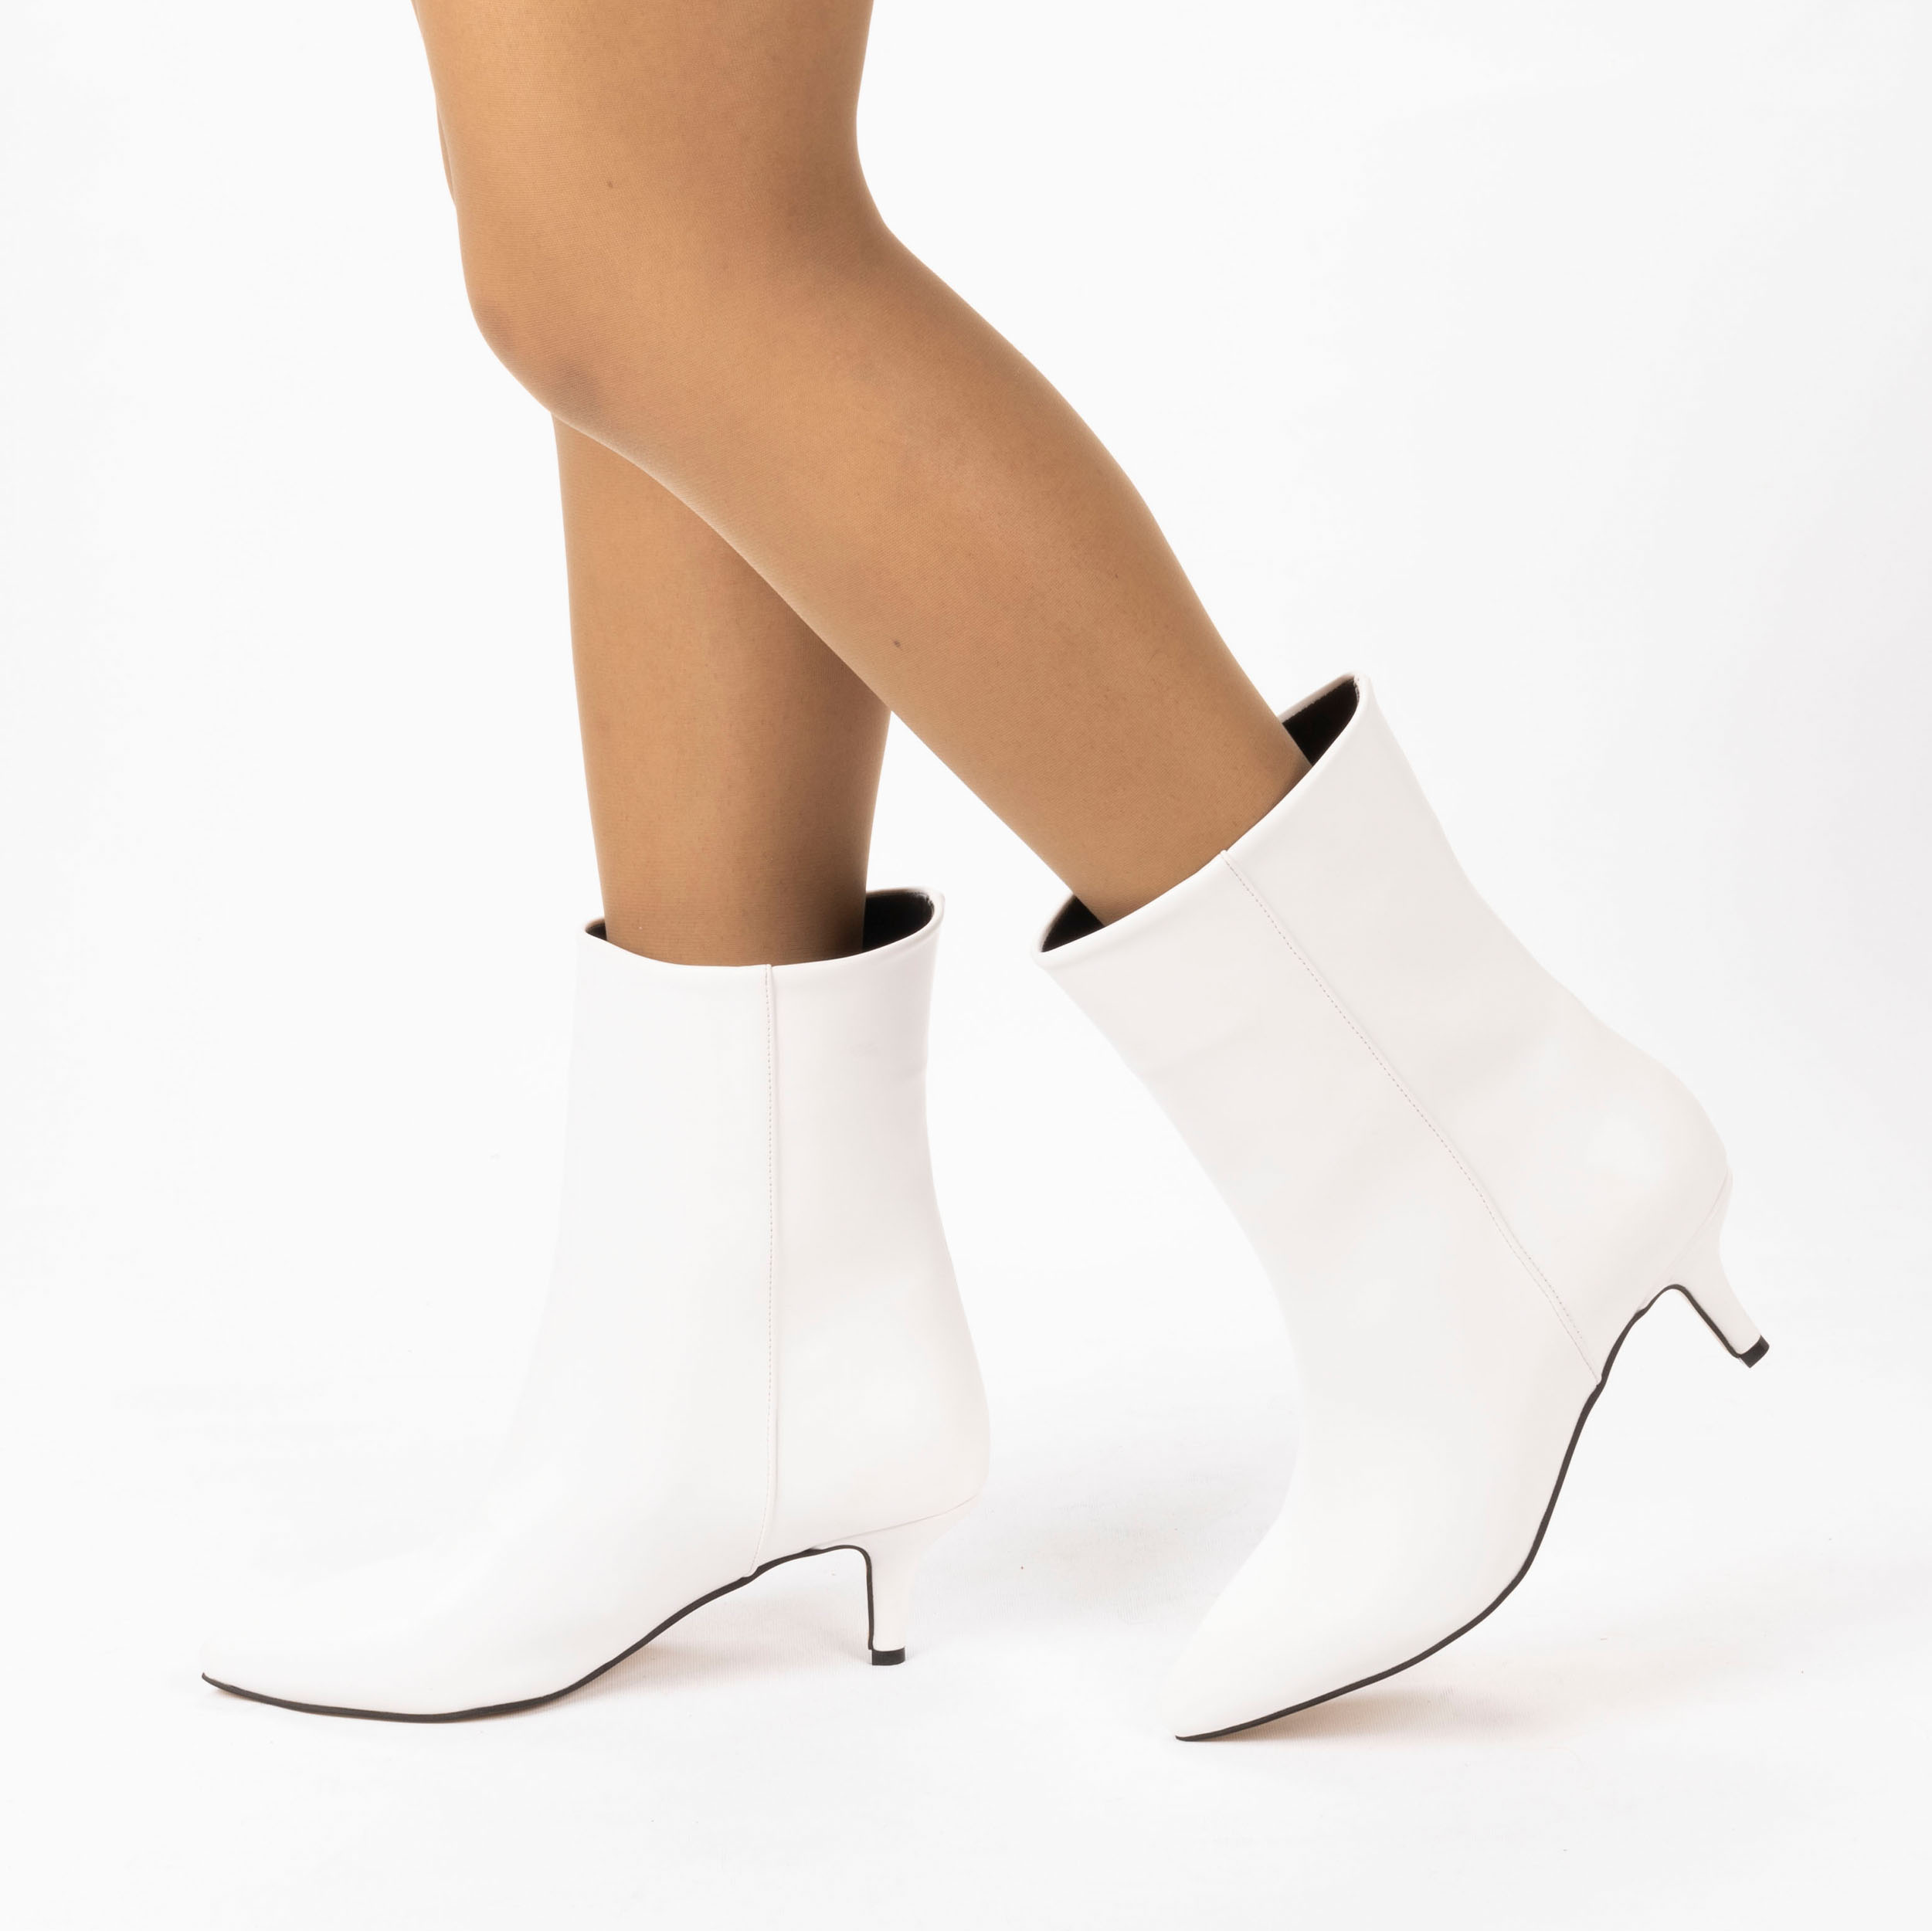 Kadın Kısa Topuklu Sivri Burunlu Klasik Şık Bot, Renk: Beyaz, Beden: 37